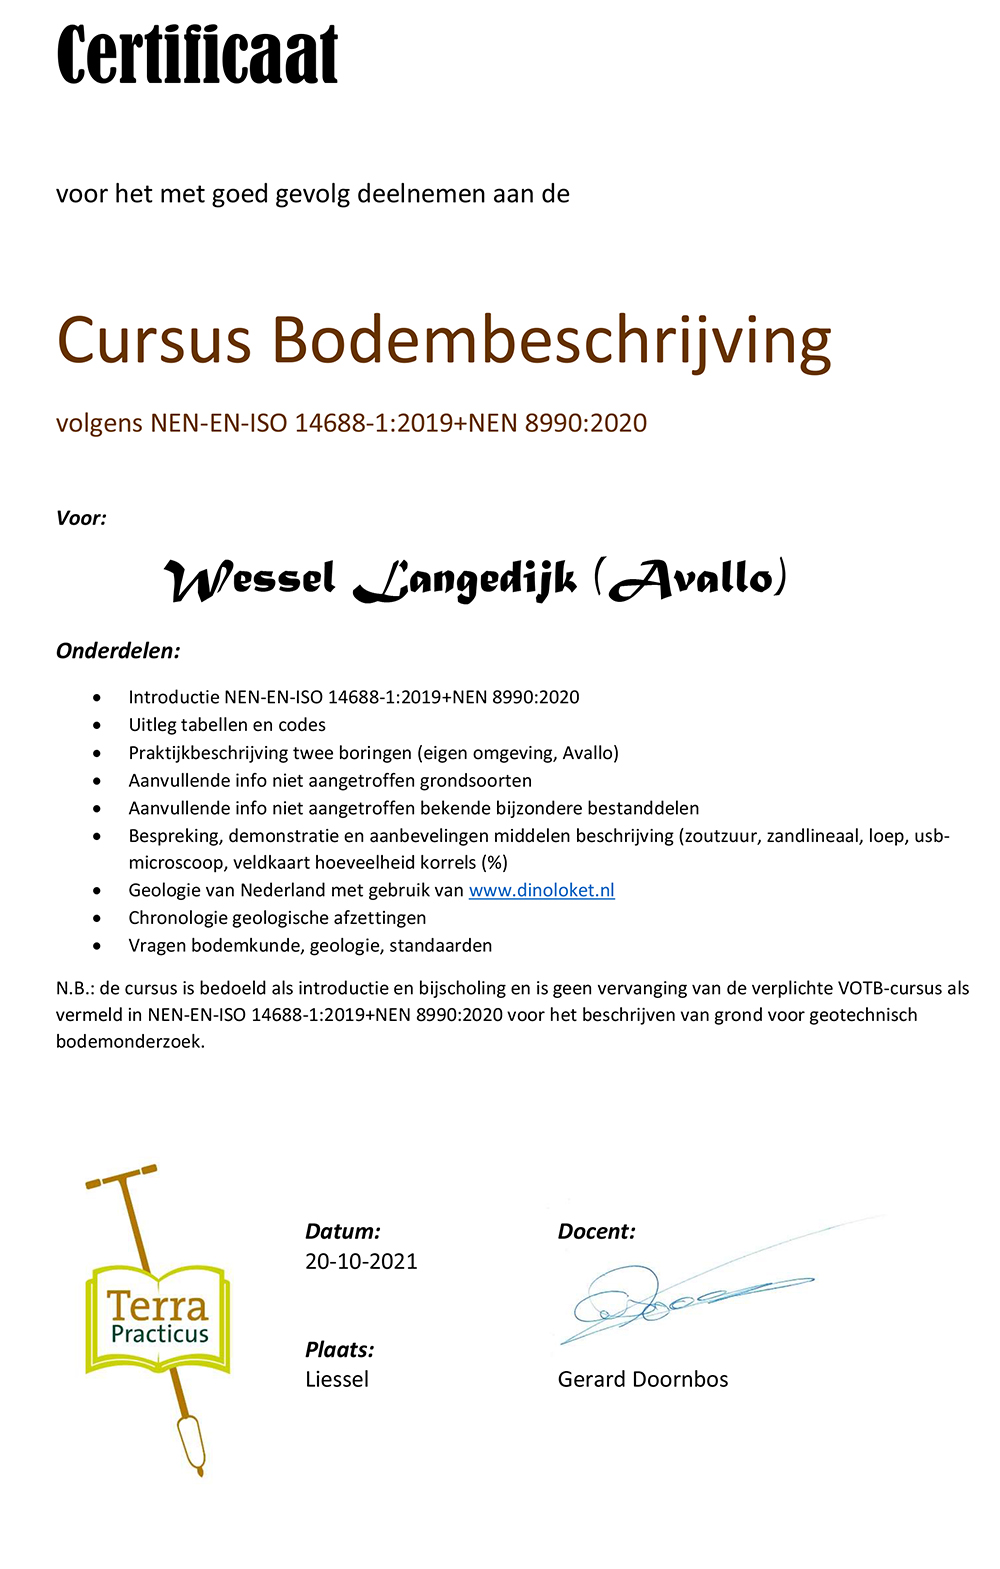 Certificaat bodembeschrijving Wessel Langendijk